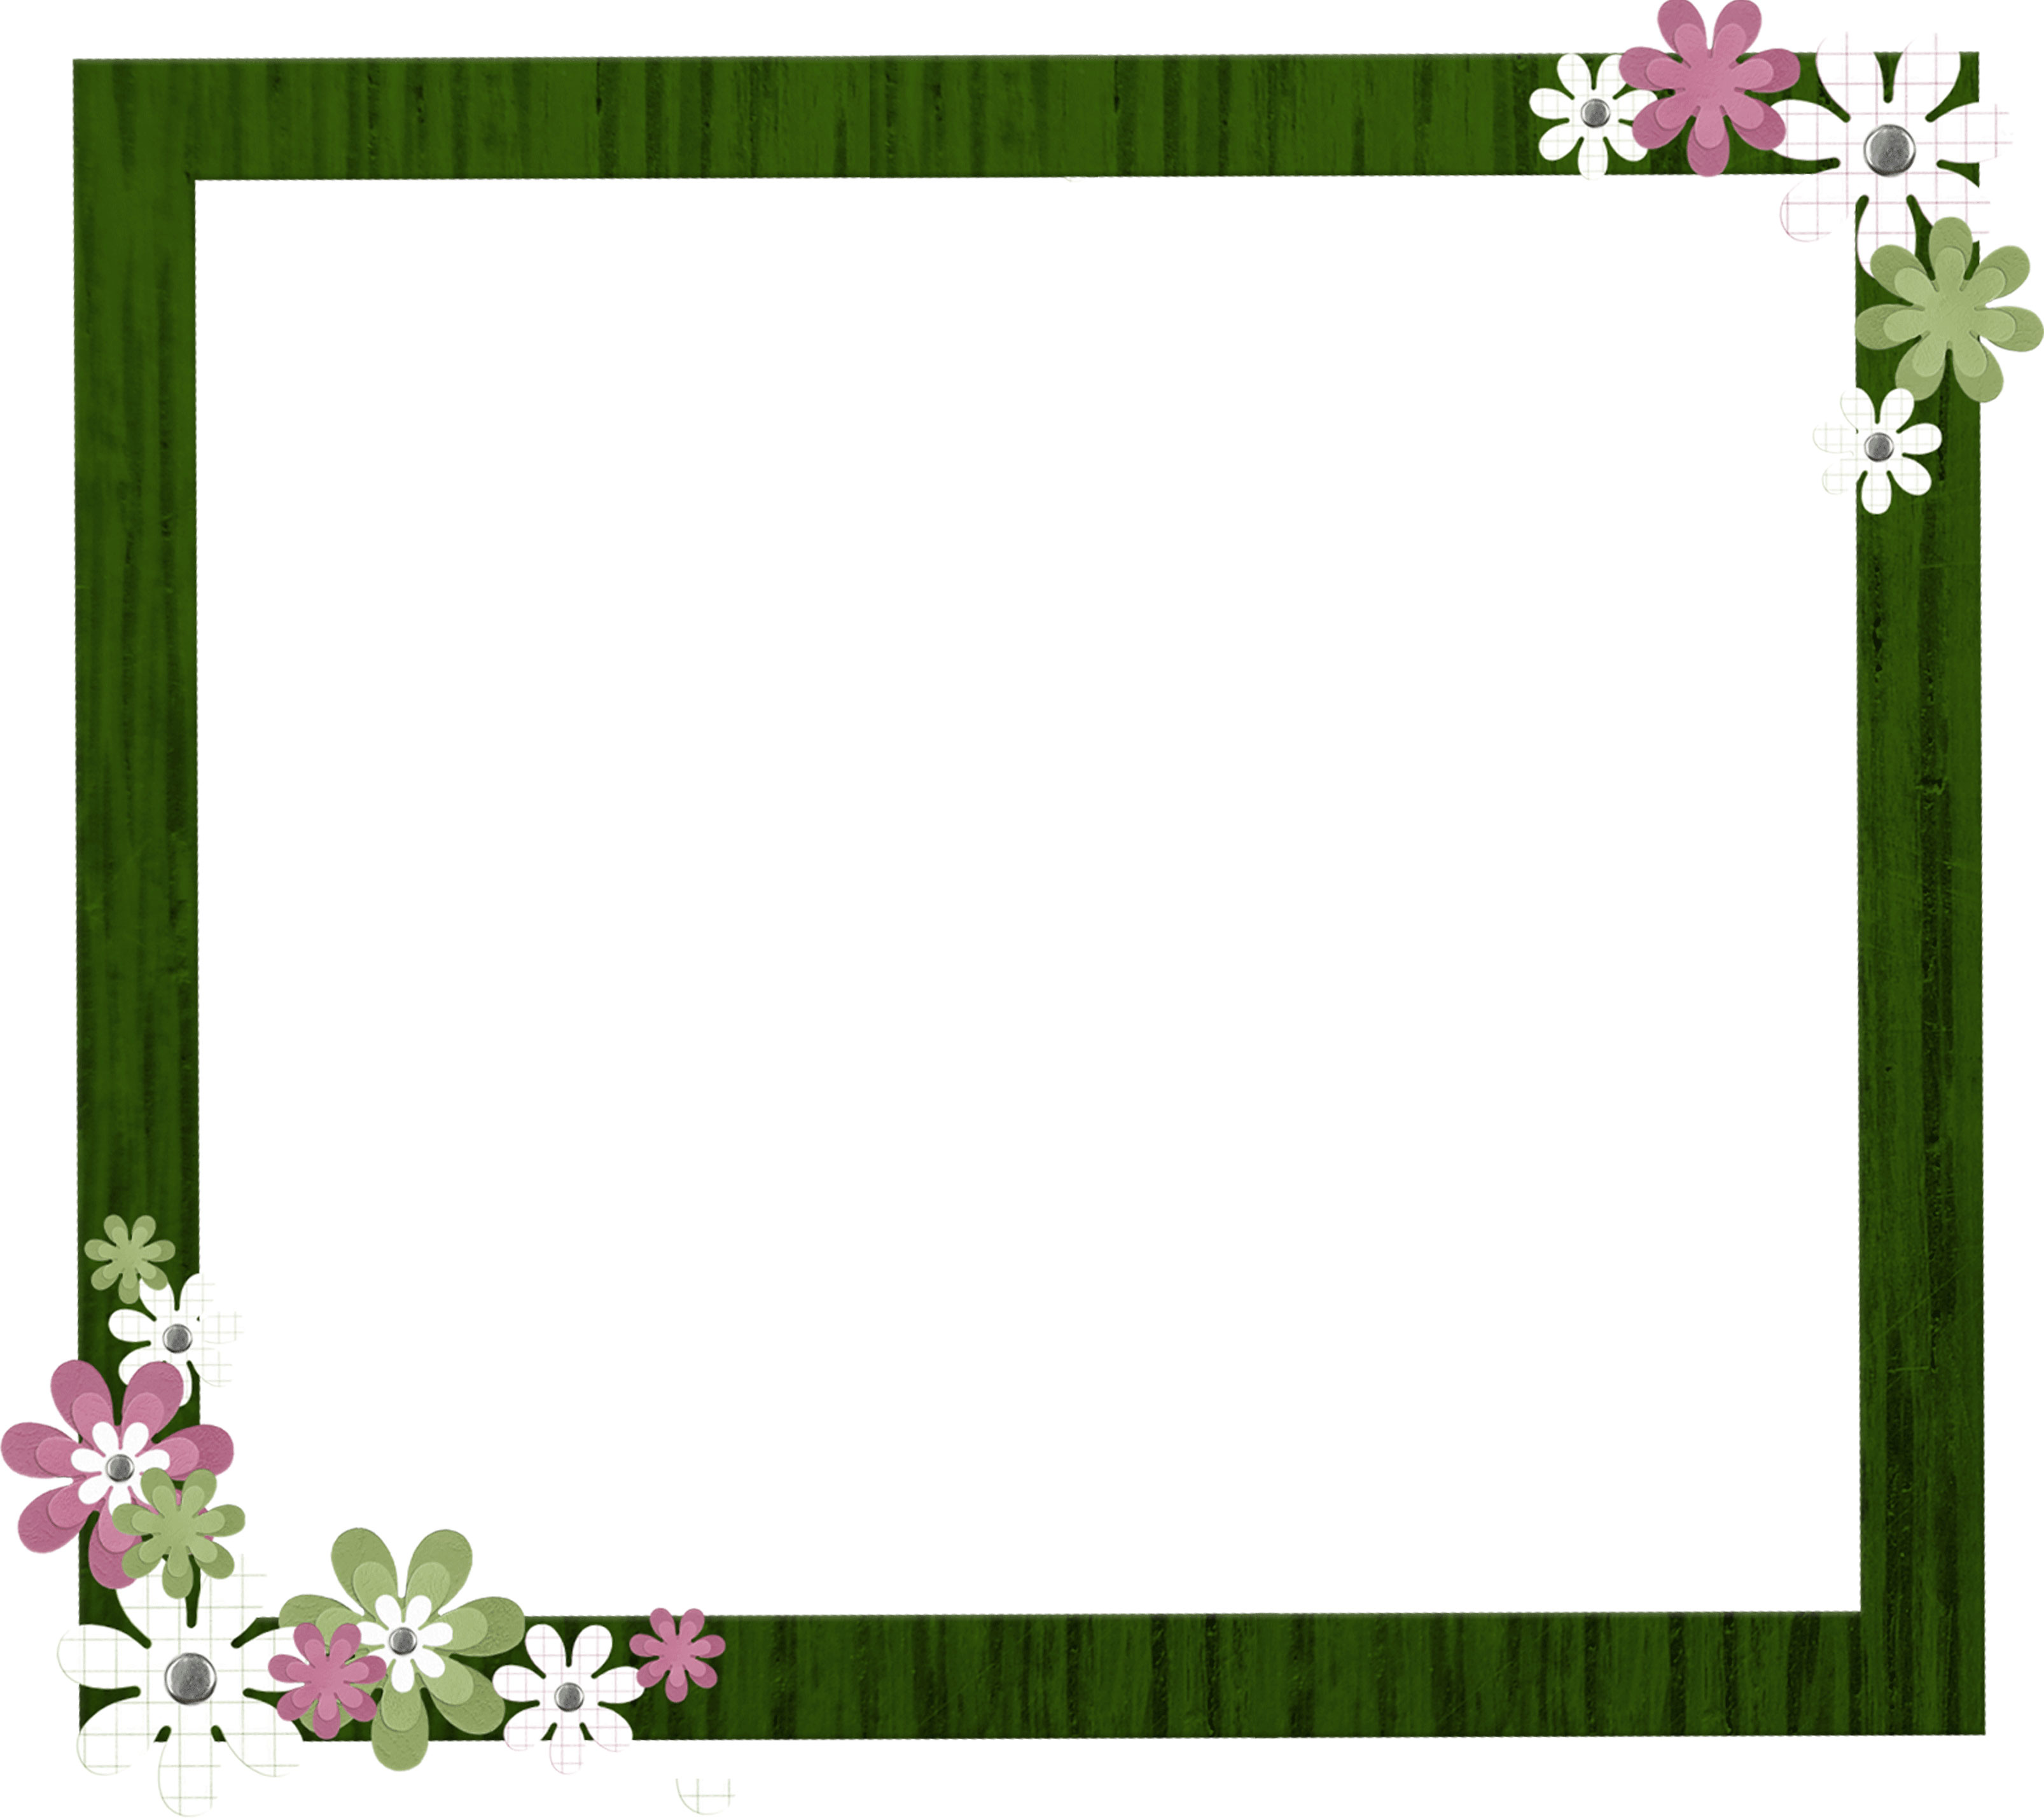 花のイラスト フリー素材 フレーム枠no 275 緑の木目 額縁